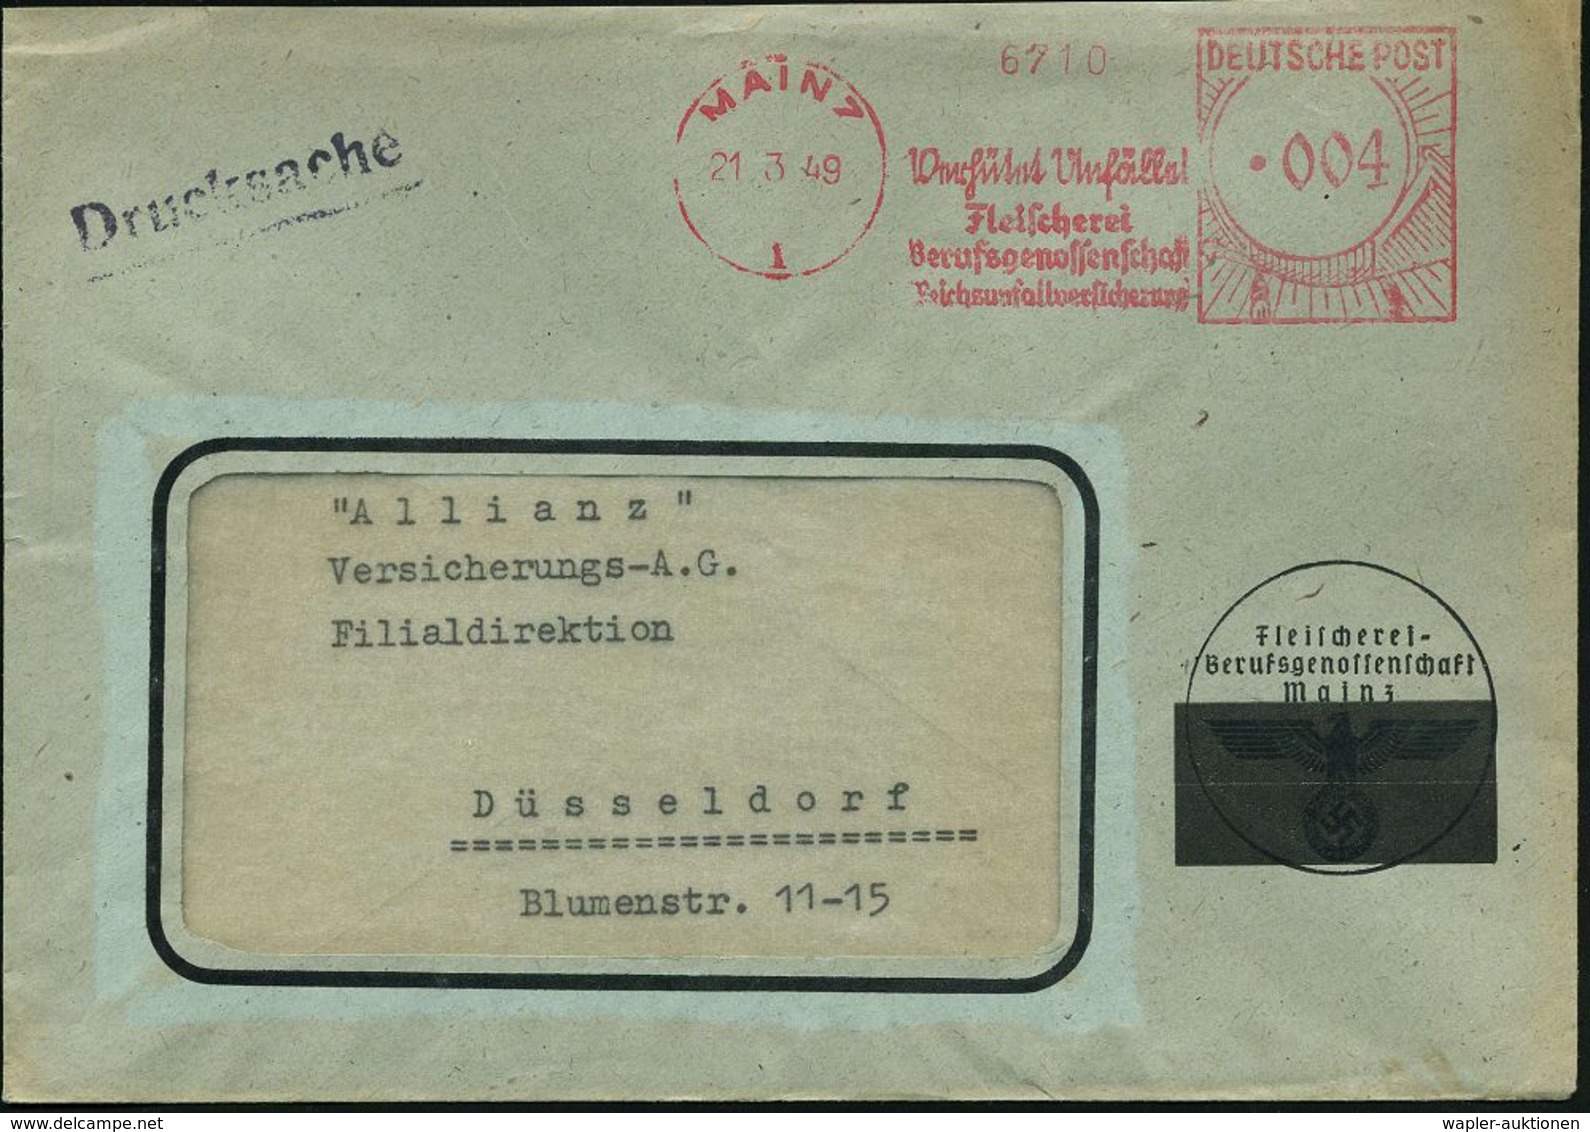 SÜTTERLIN : MAINZ/ 1/ Verhütet Unfälle!/ Fleischerei/ Berufsgenossenschaft/ Reichsunfallversicherung 1949 (21.3.) Selten - Non Classés